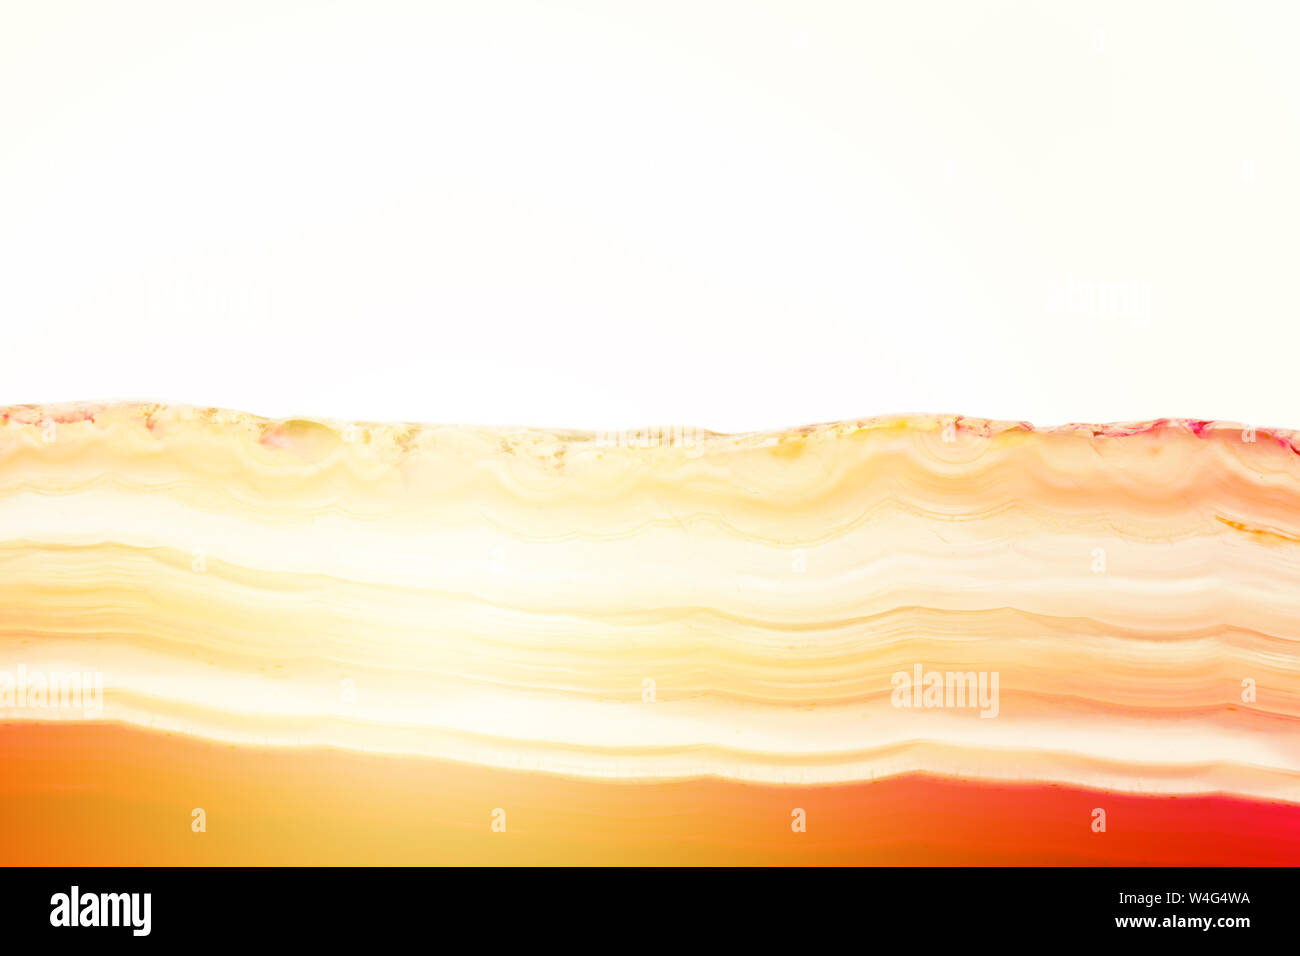 Zusammenfassung Hintergrund, rot und orange Achat mineral Querschnitt mit Sunbeam auf weißem Hintergrund gestreift Stockfoto